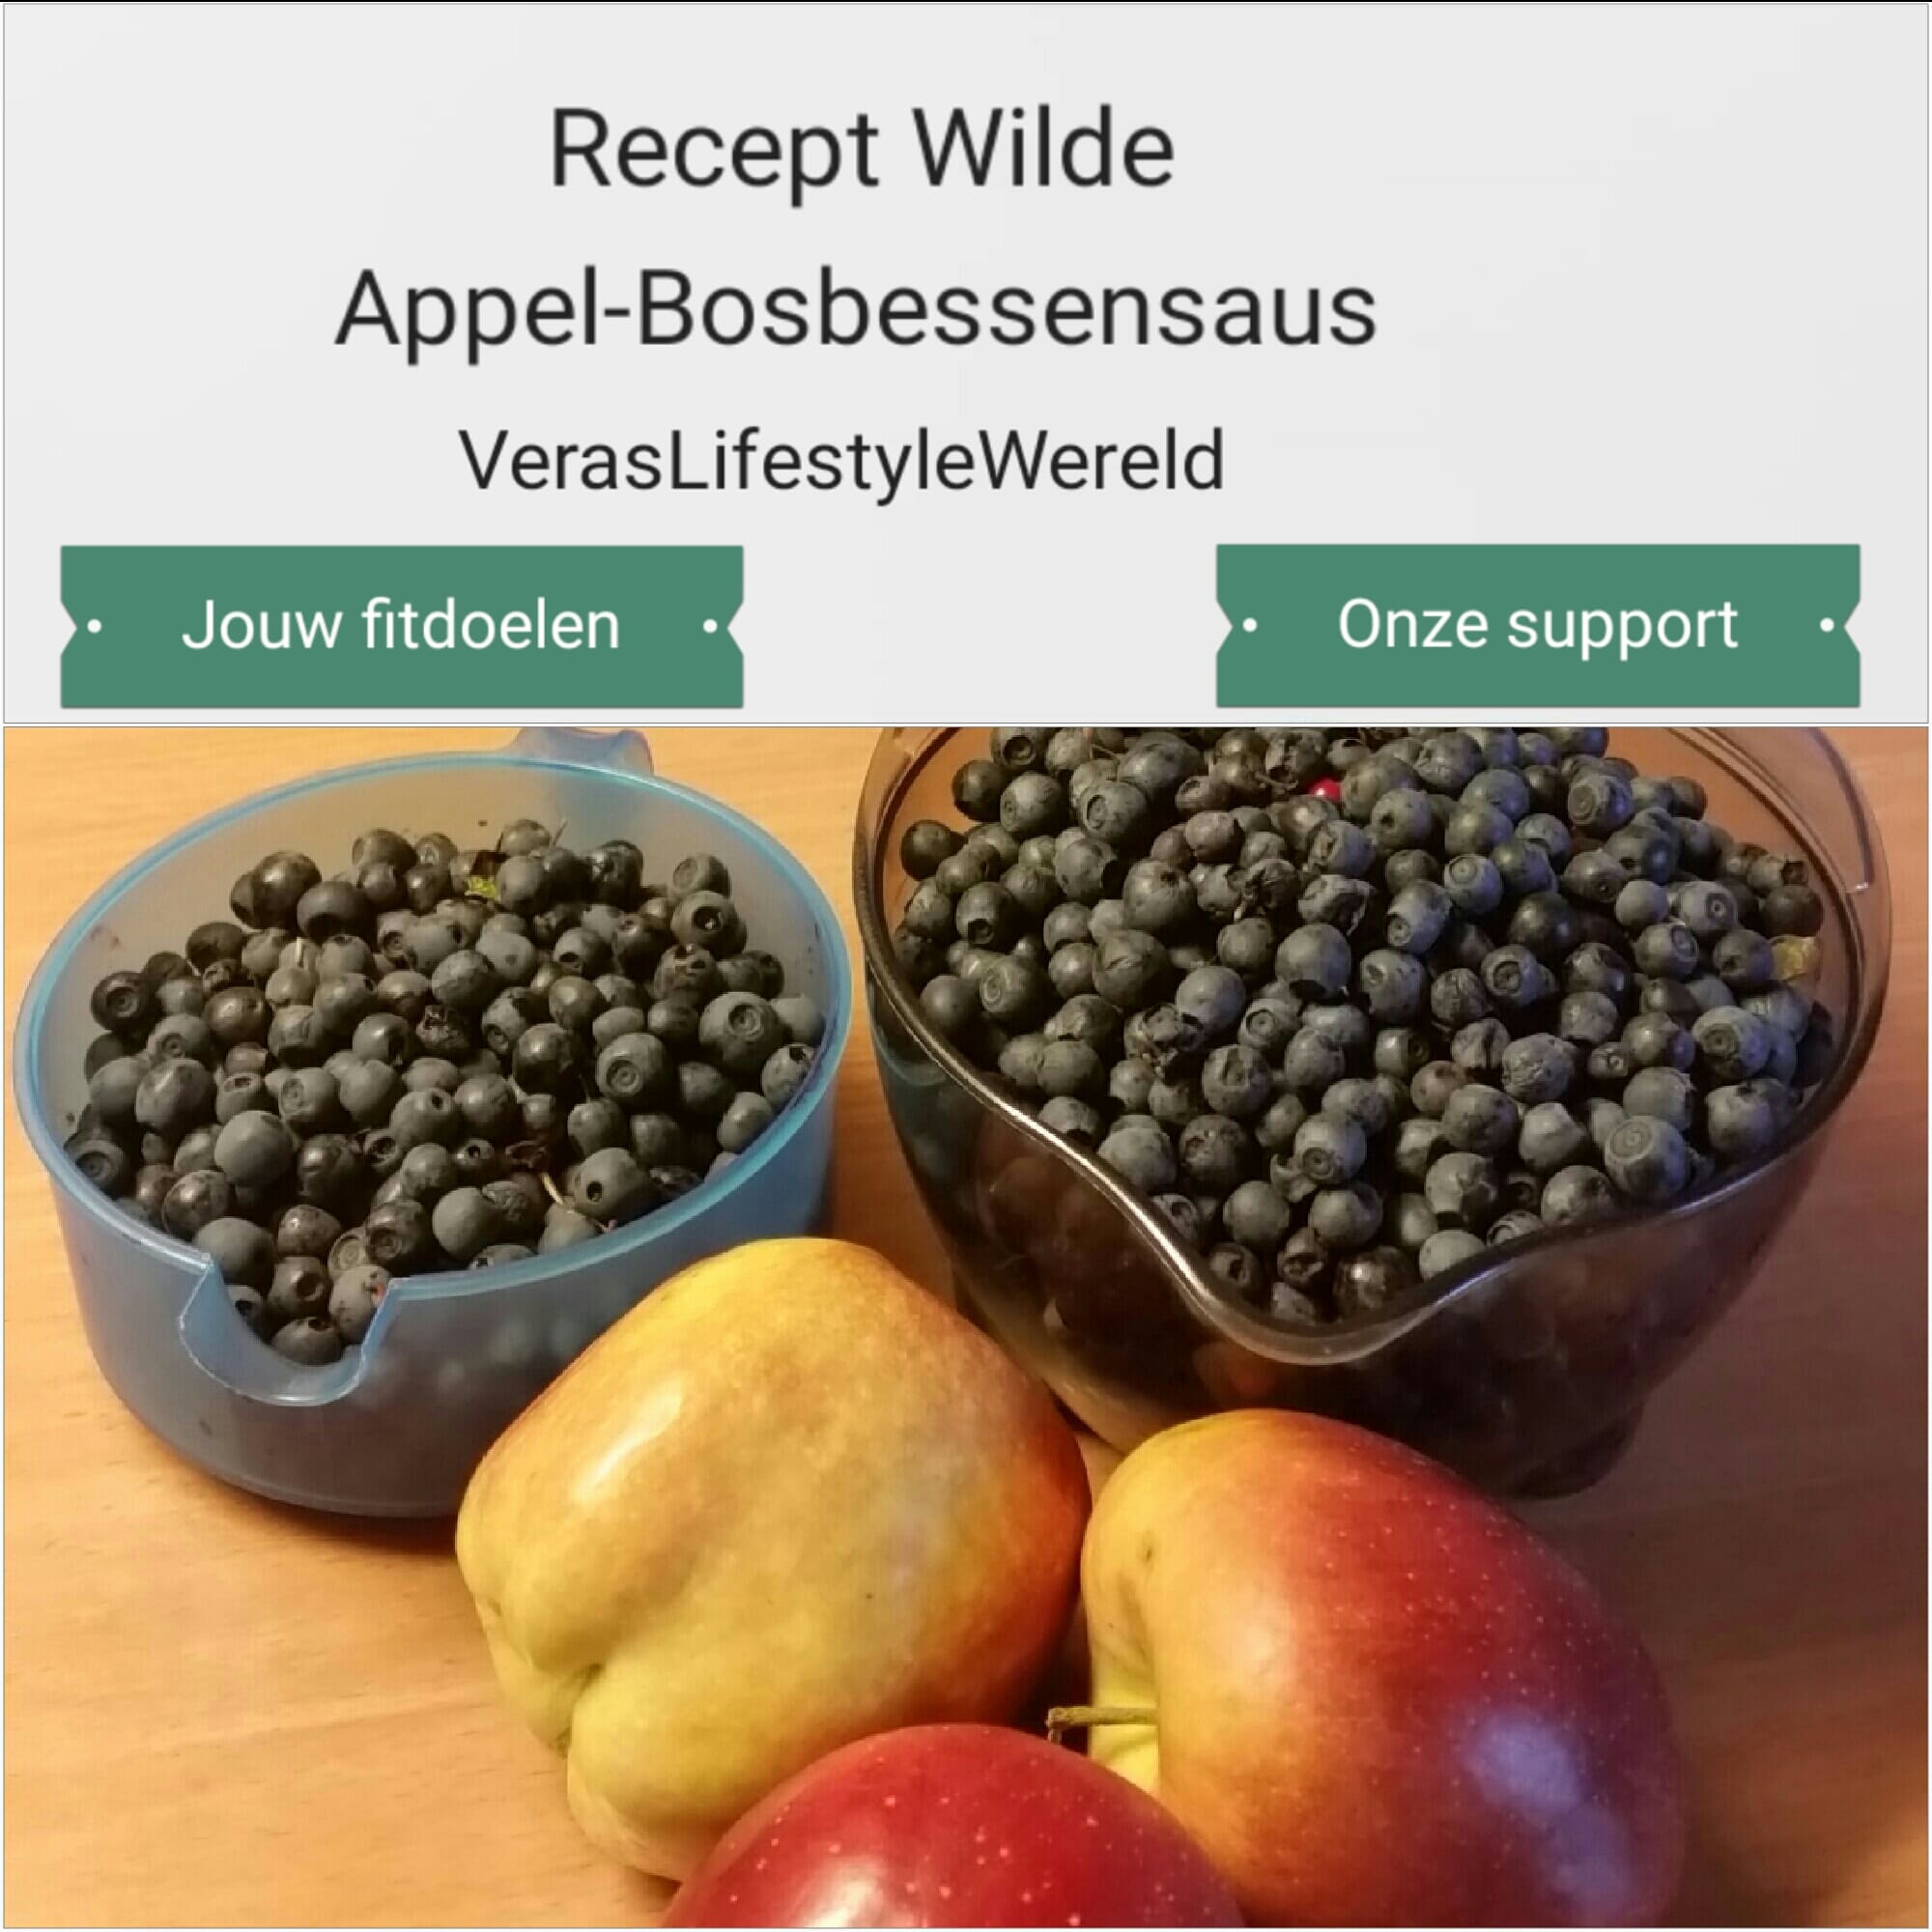 Recept wilde appel-bosbessensaus